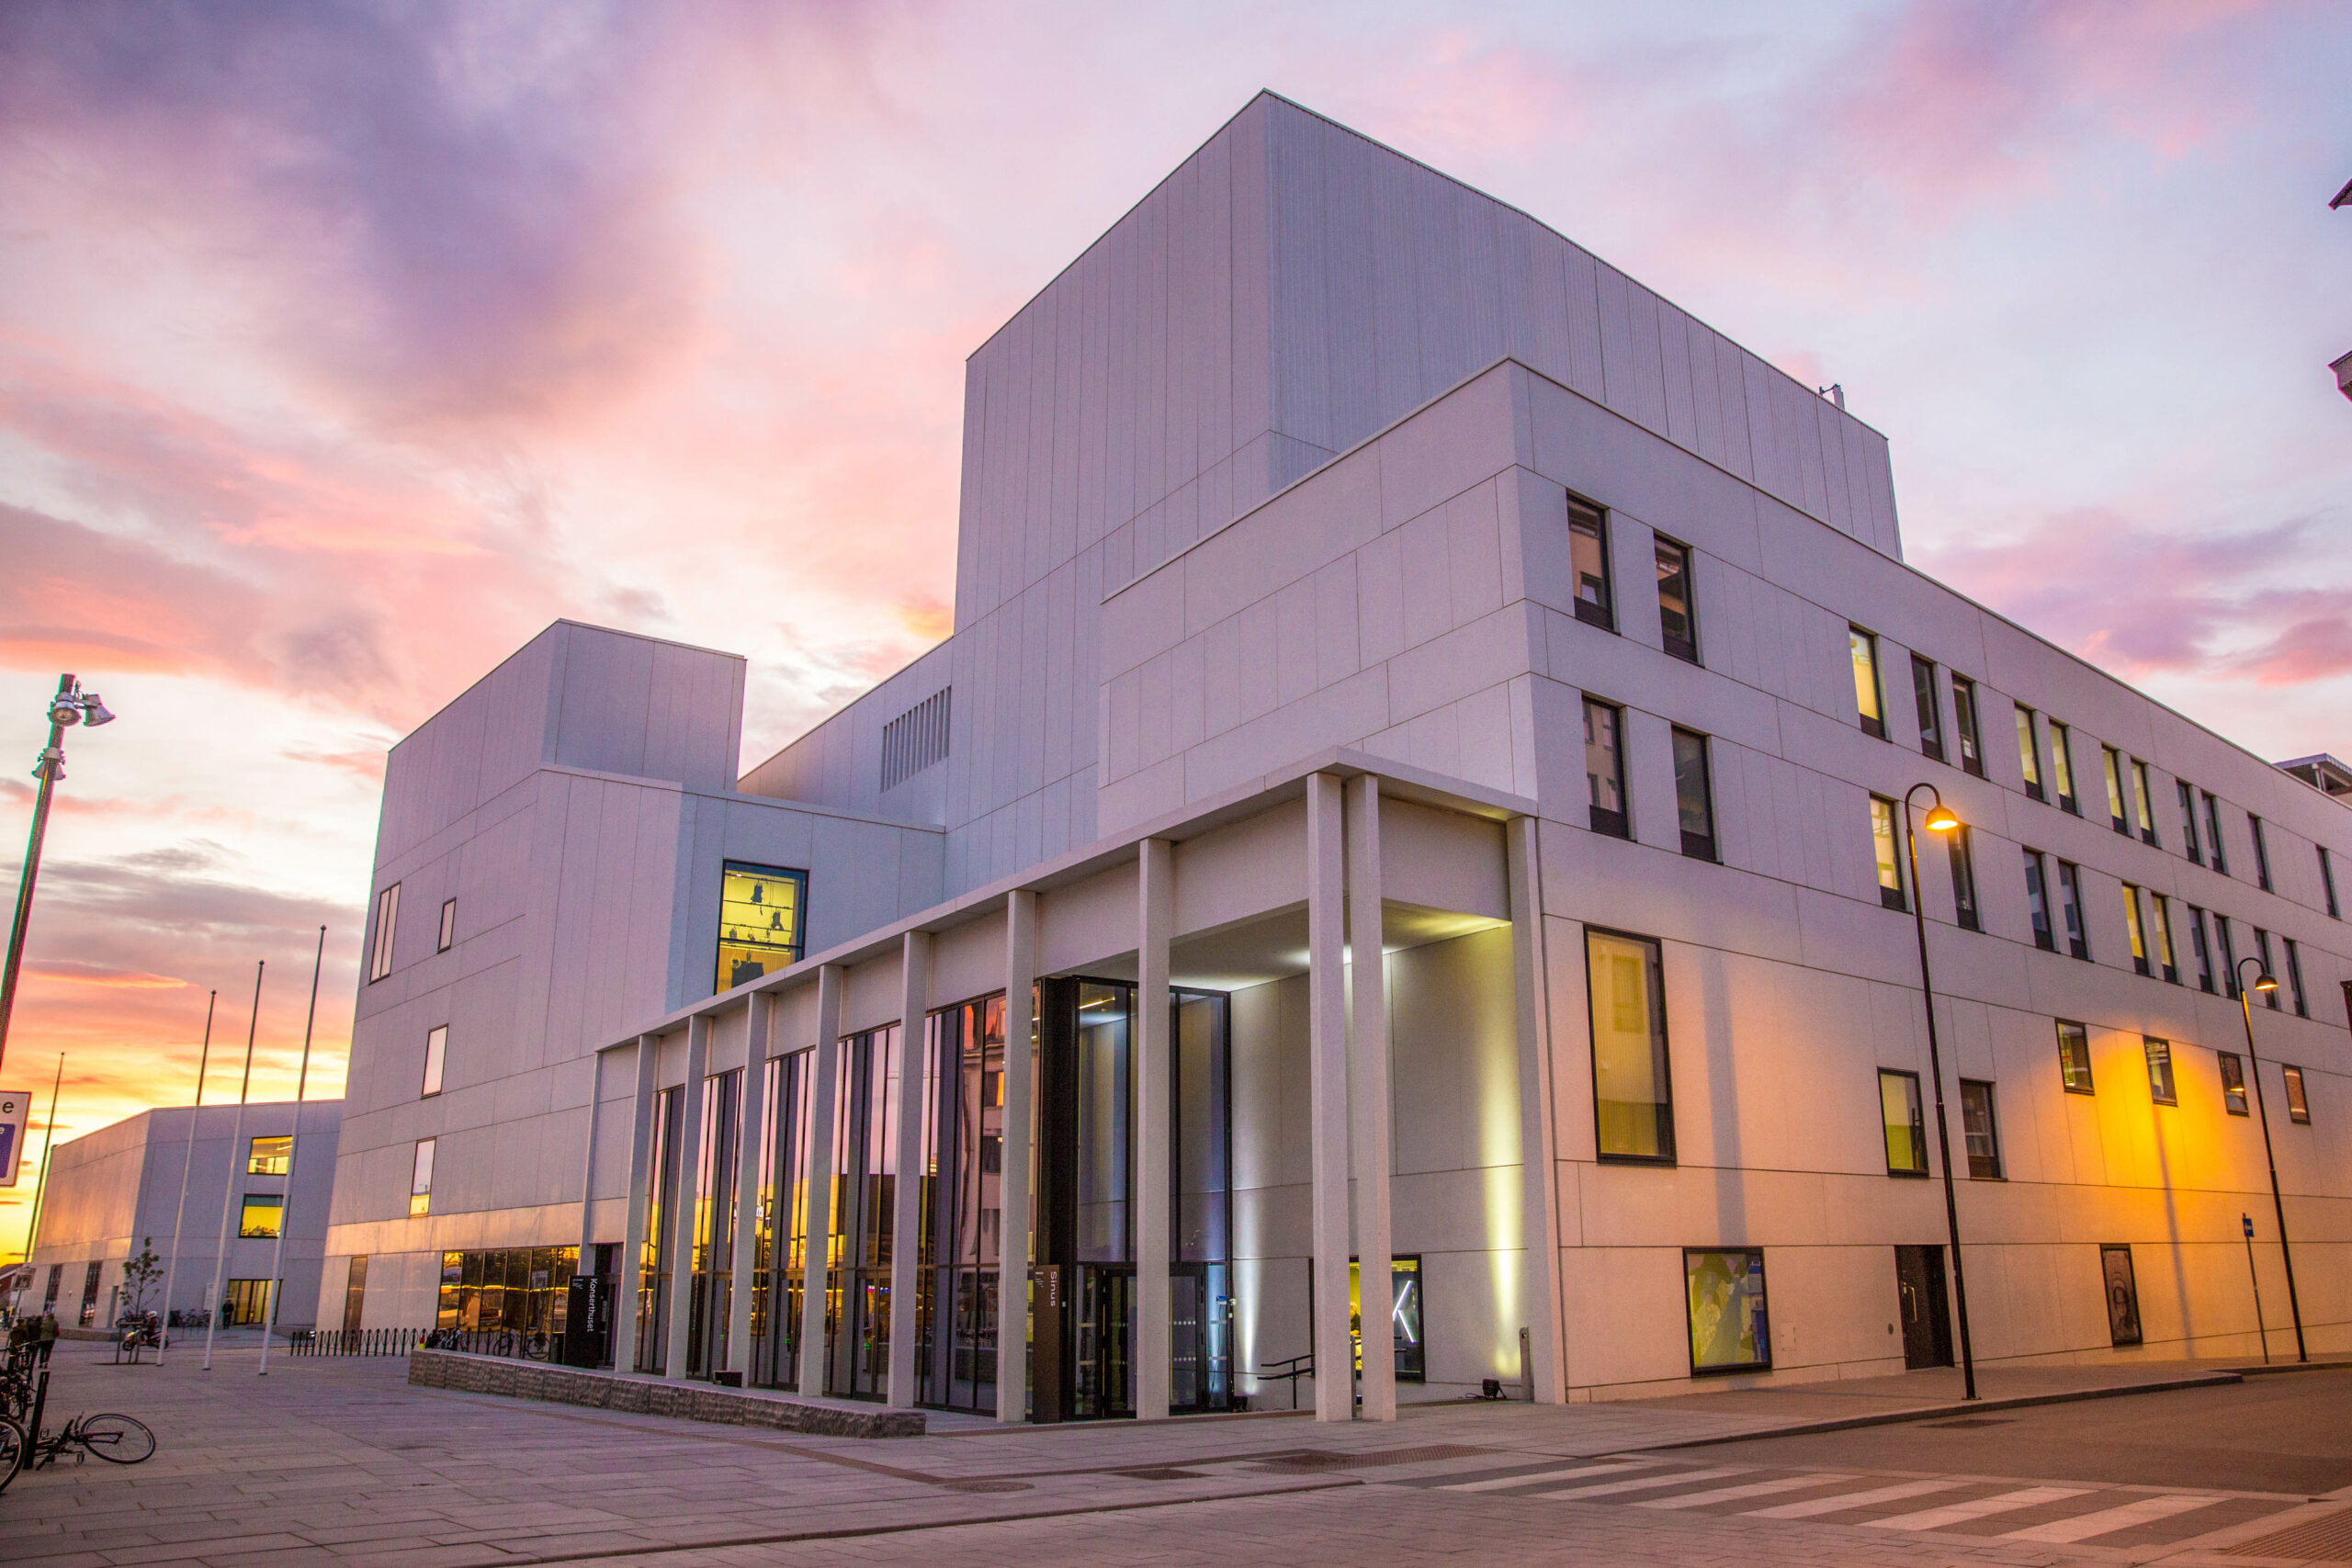 Stormen kulturhus - hvitt moderne bygg i solnedgang